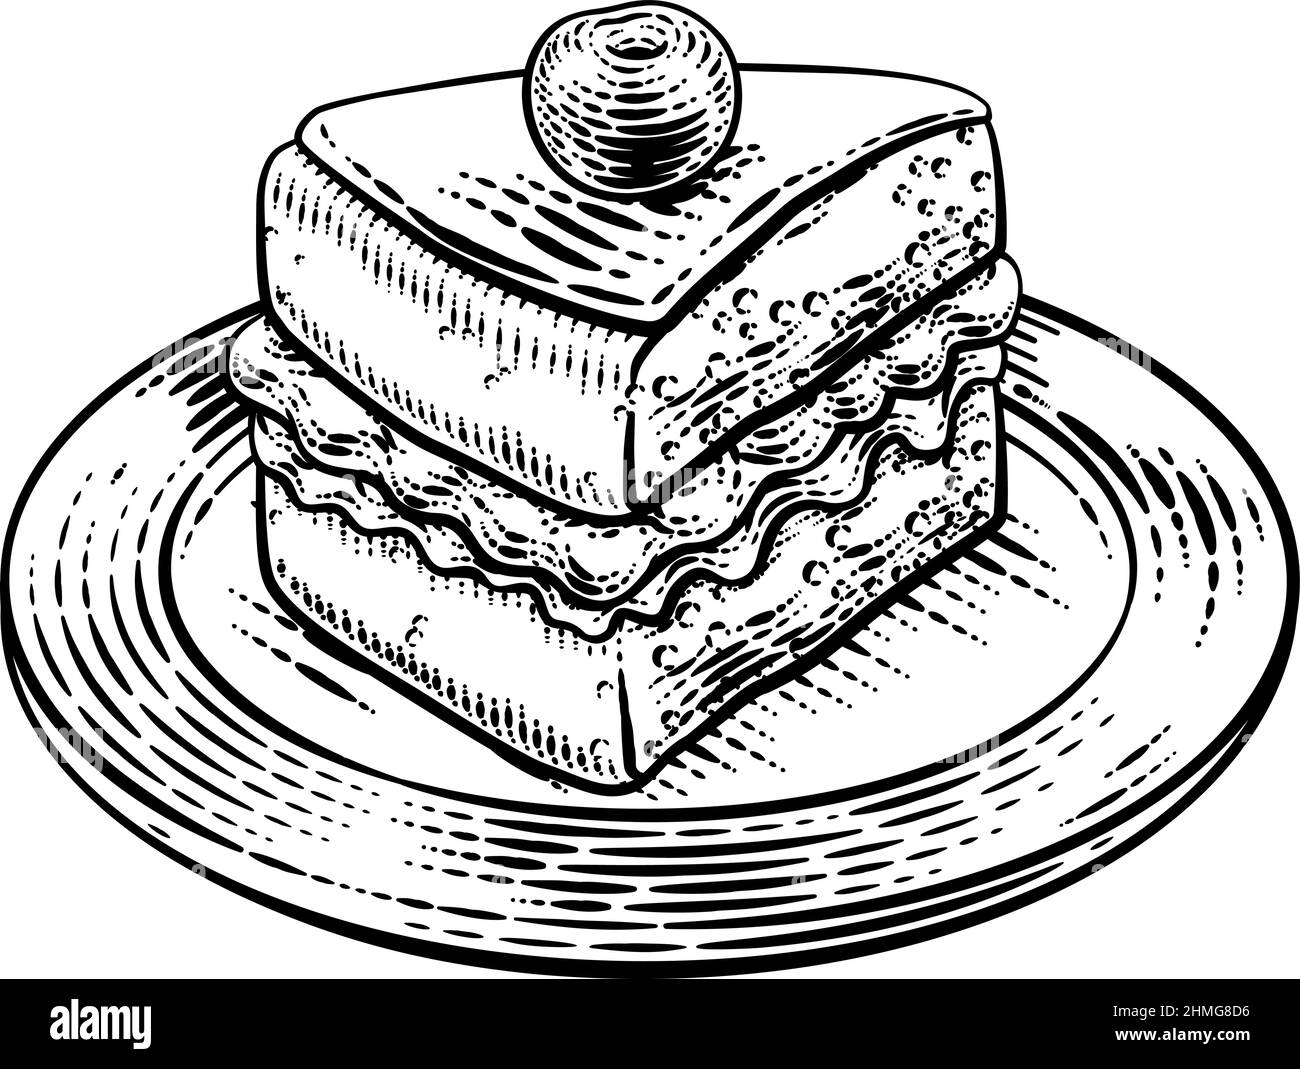 Doodle style birthday cake and cake slice  Stock Illustration  73101357  PIXTA